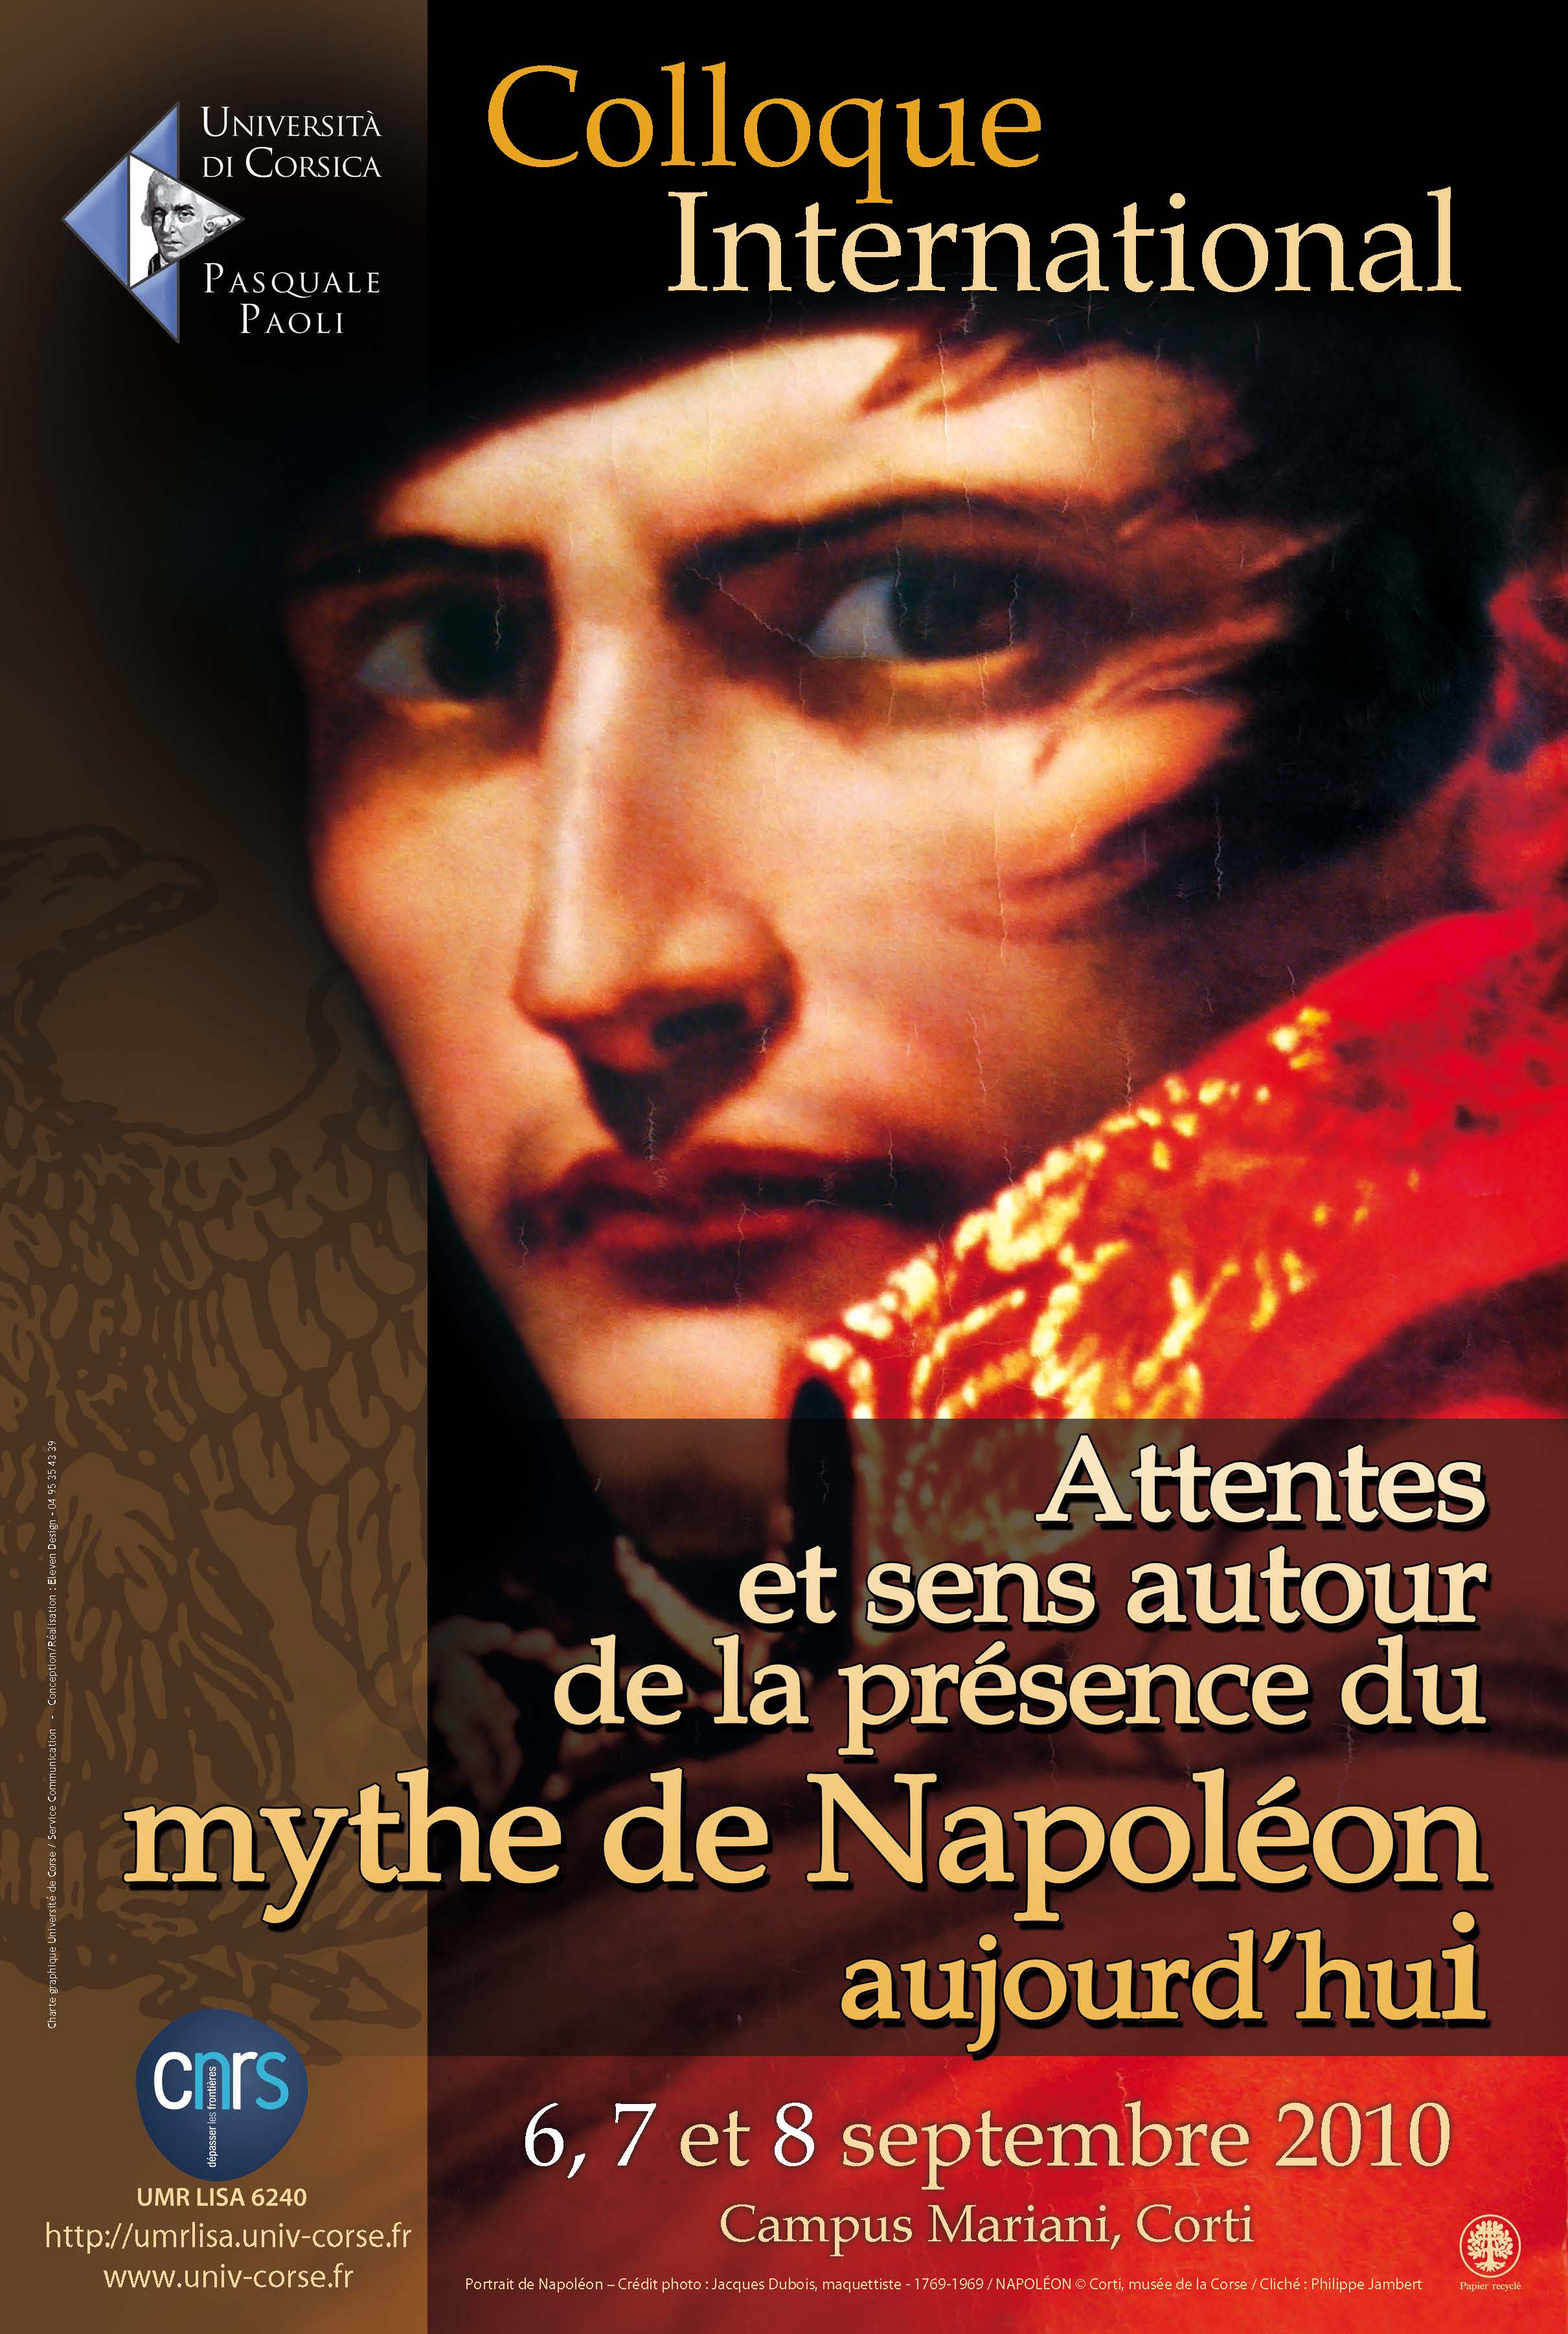 >Colloque Attentes et sens autour de la présence du mythe de Napoléon aujourd’hui